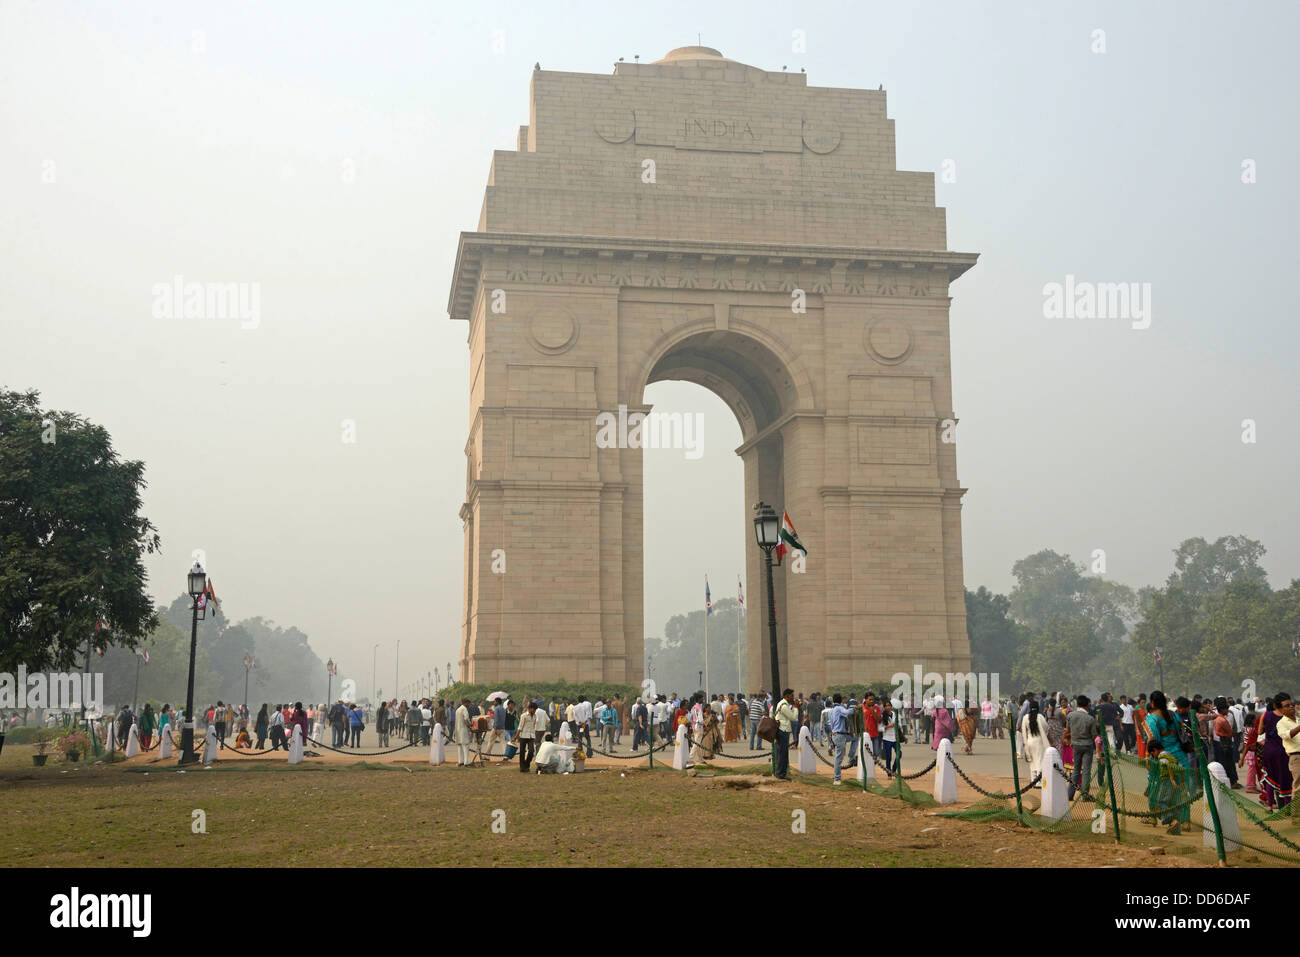 Spesso si blocca di smog oltre il 42-metro di altezza l'India Gate si trova a Delhi, India. Foto Stock